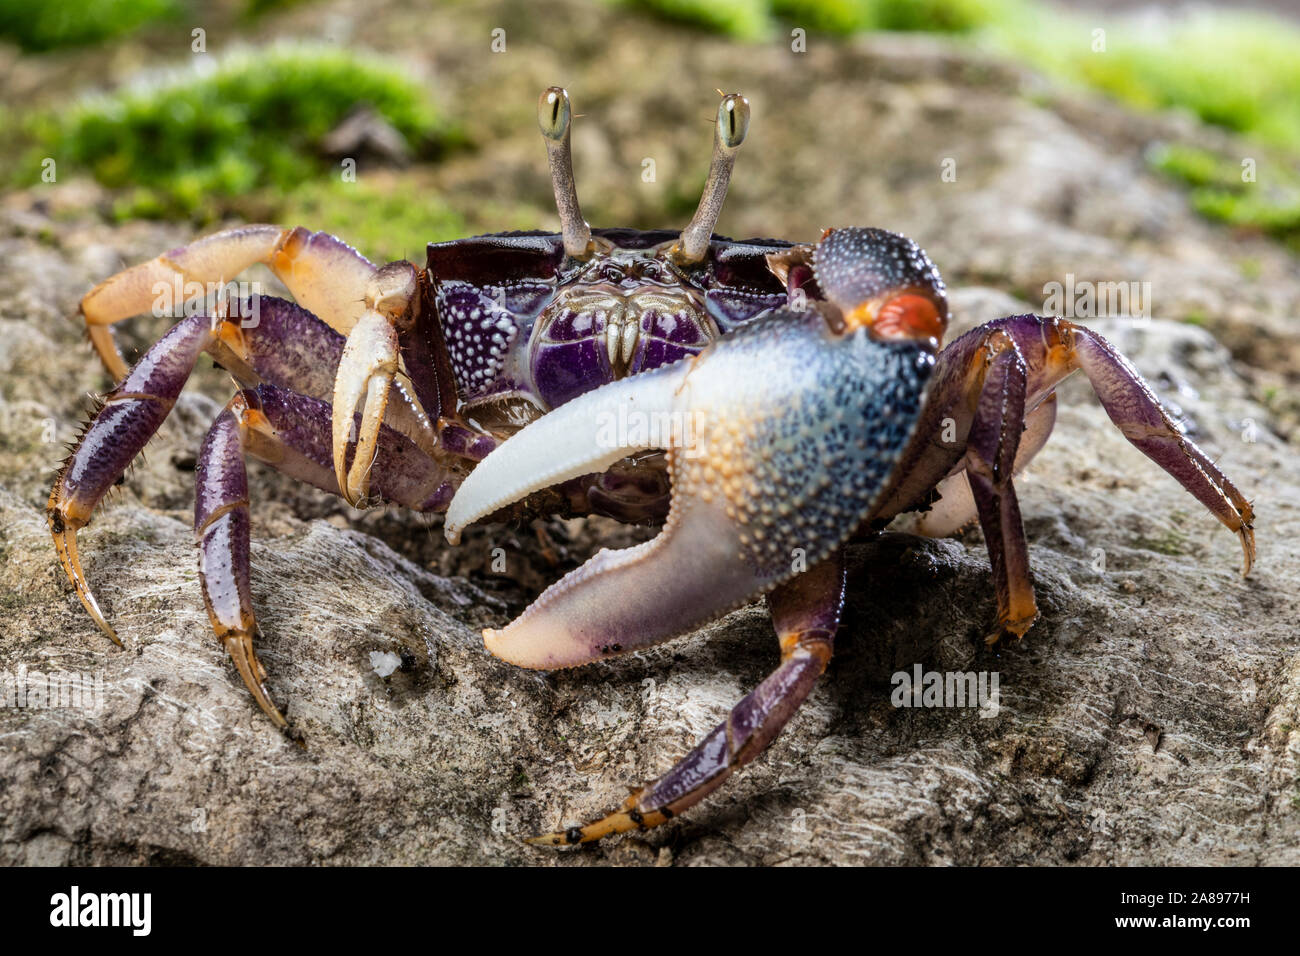 Afruca tangeri,Winkerkrabbe,fiddler crab Stock Photo